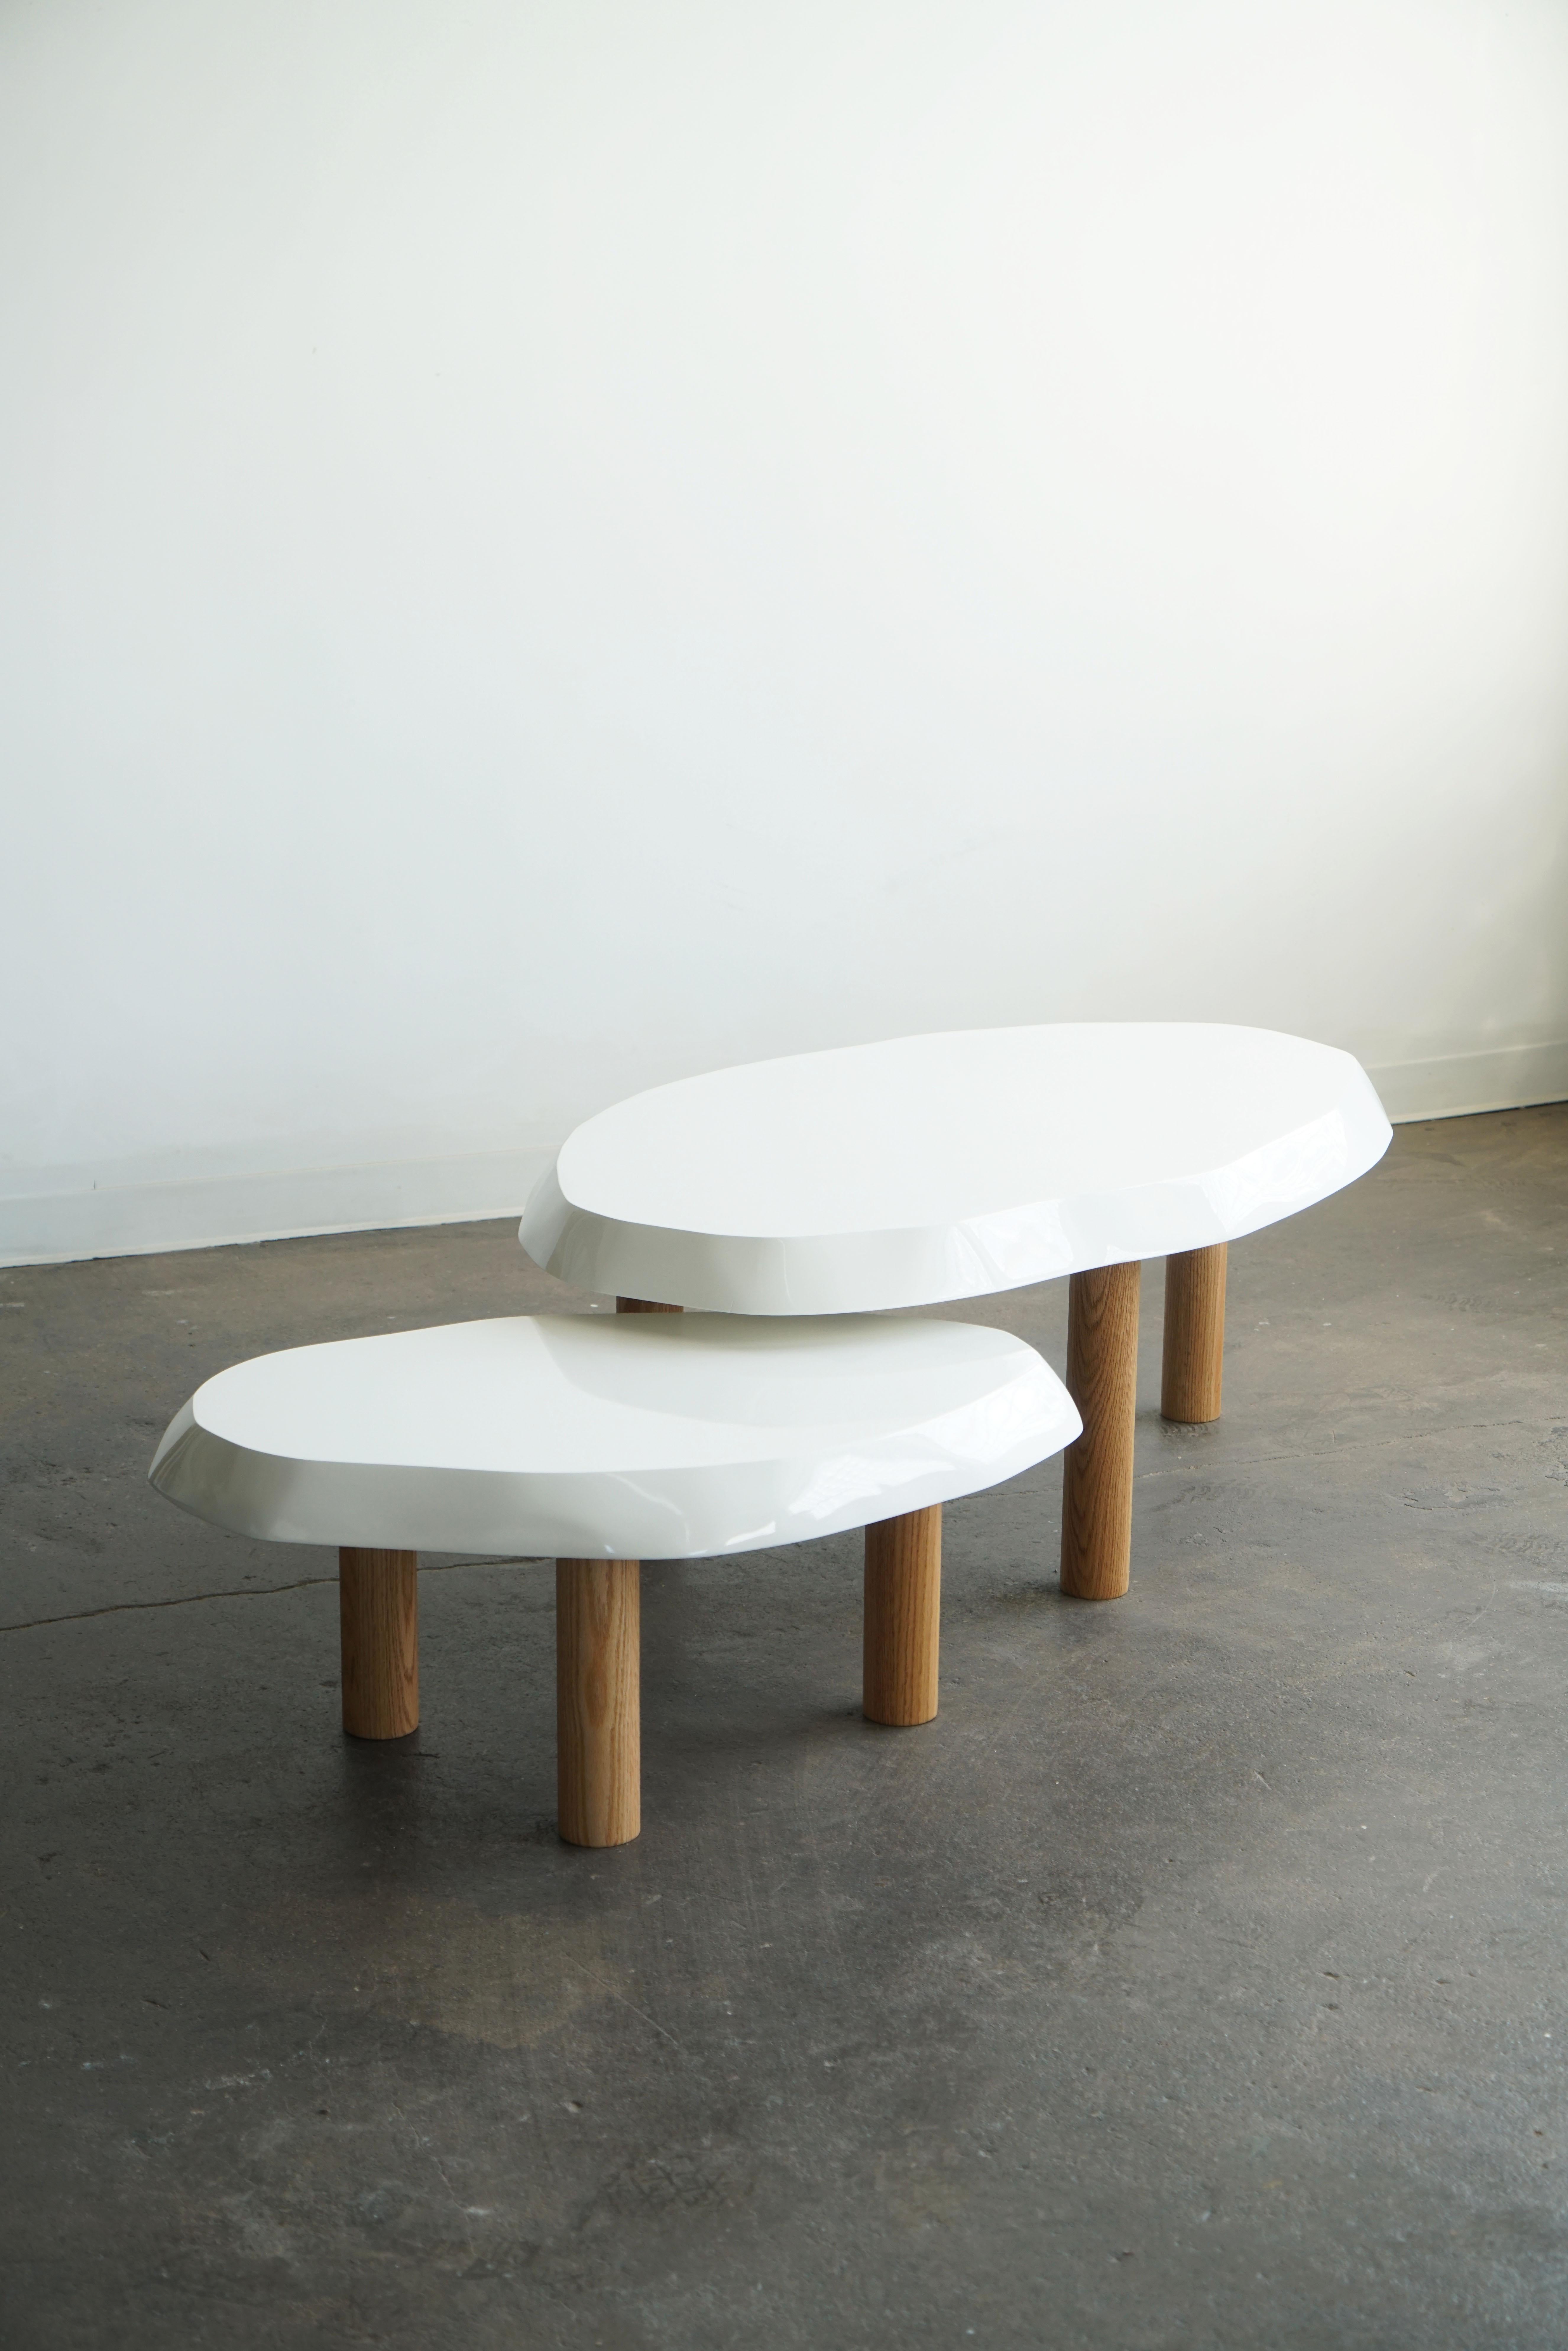 Organisch geformter Couchtisch von Last Workshop, 2023 
Die handgeformten Platten sind aus Massivholz gefertigt.
Beine aus massiver Eiche, naturbelassen. 

Abmessungen:
Tisch eins: 53 